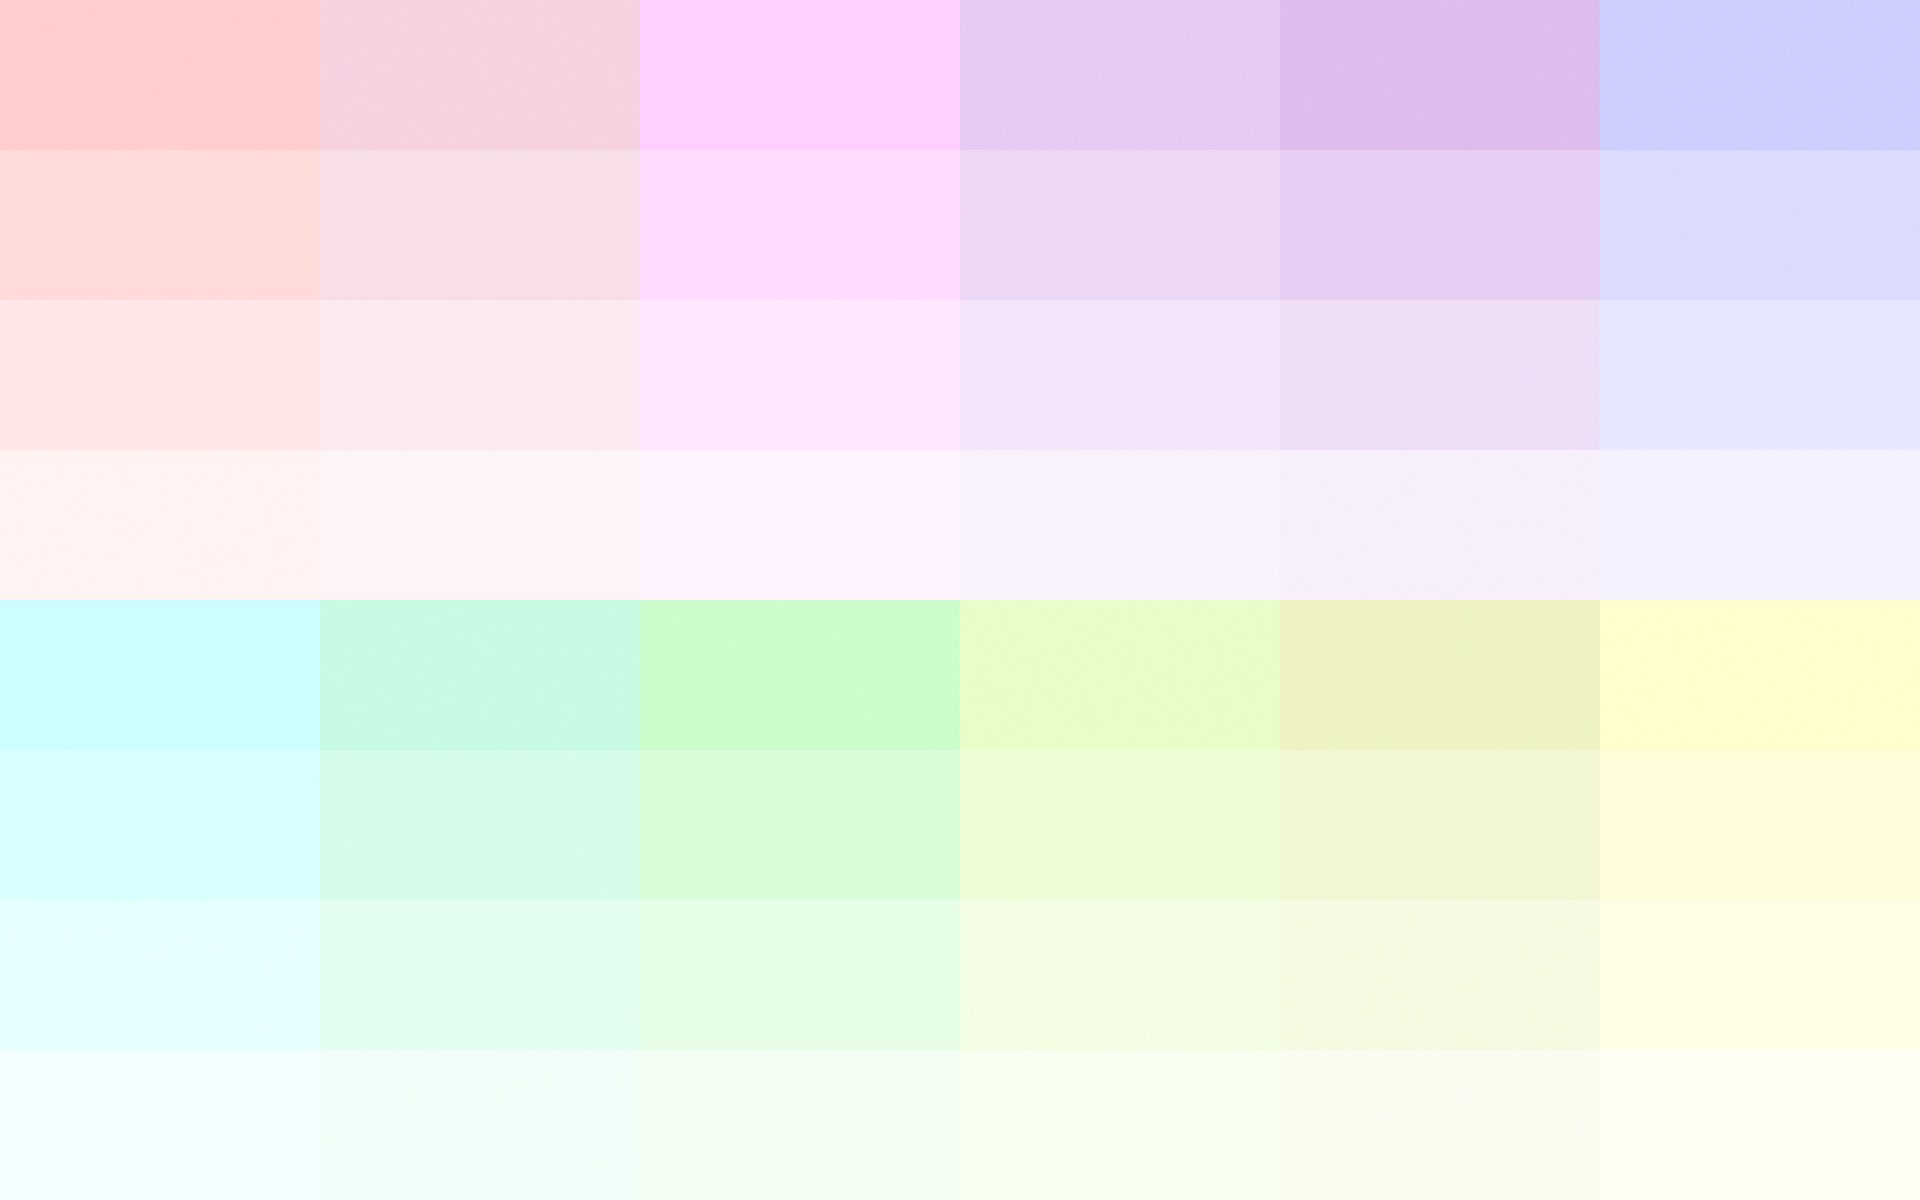 간단한 컬러 벽지,분홍,제비꽃,노랑,터키 옥,보라색